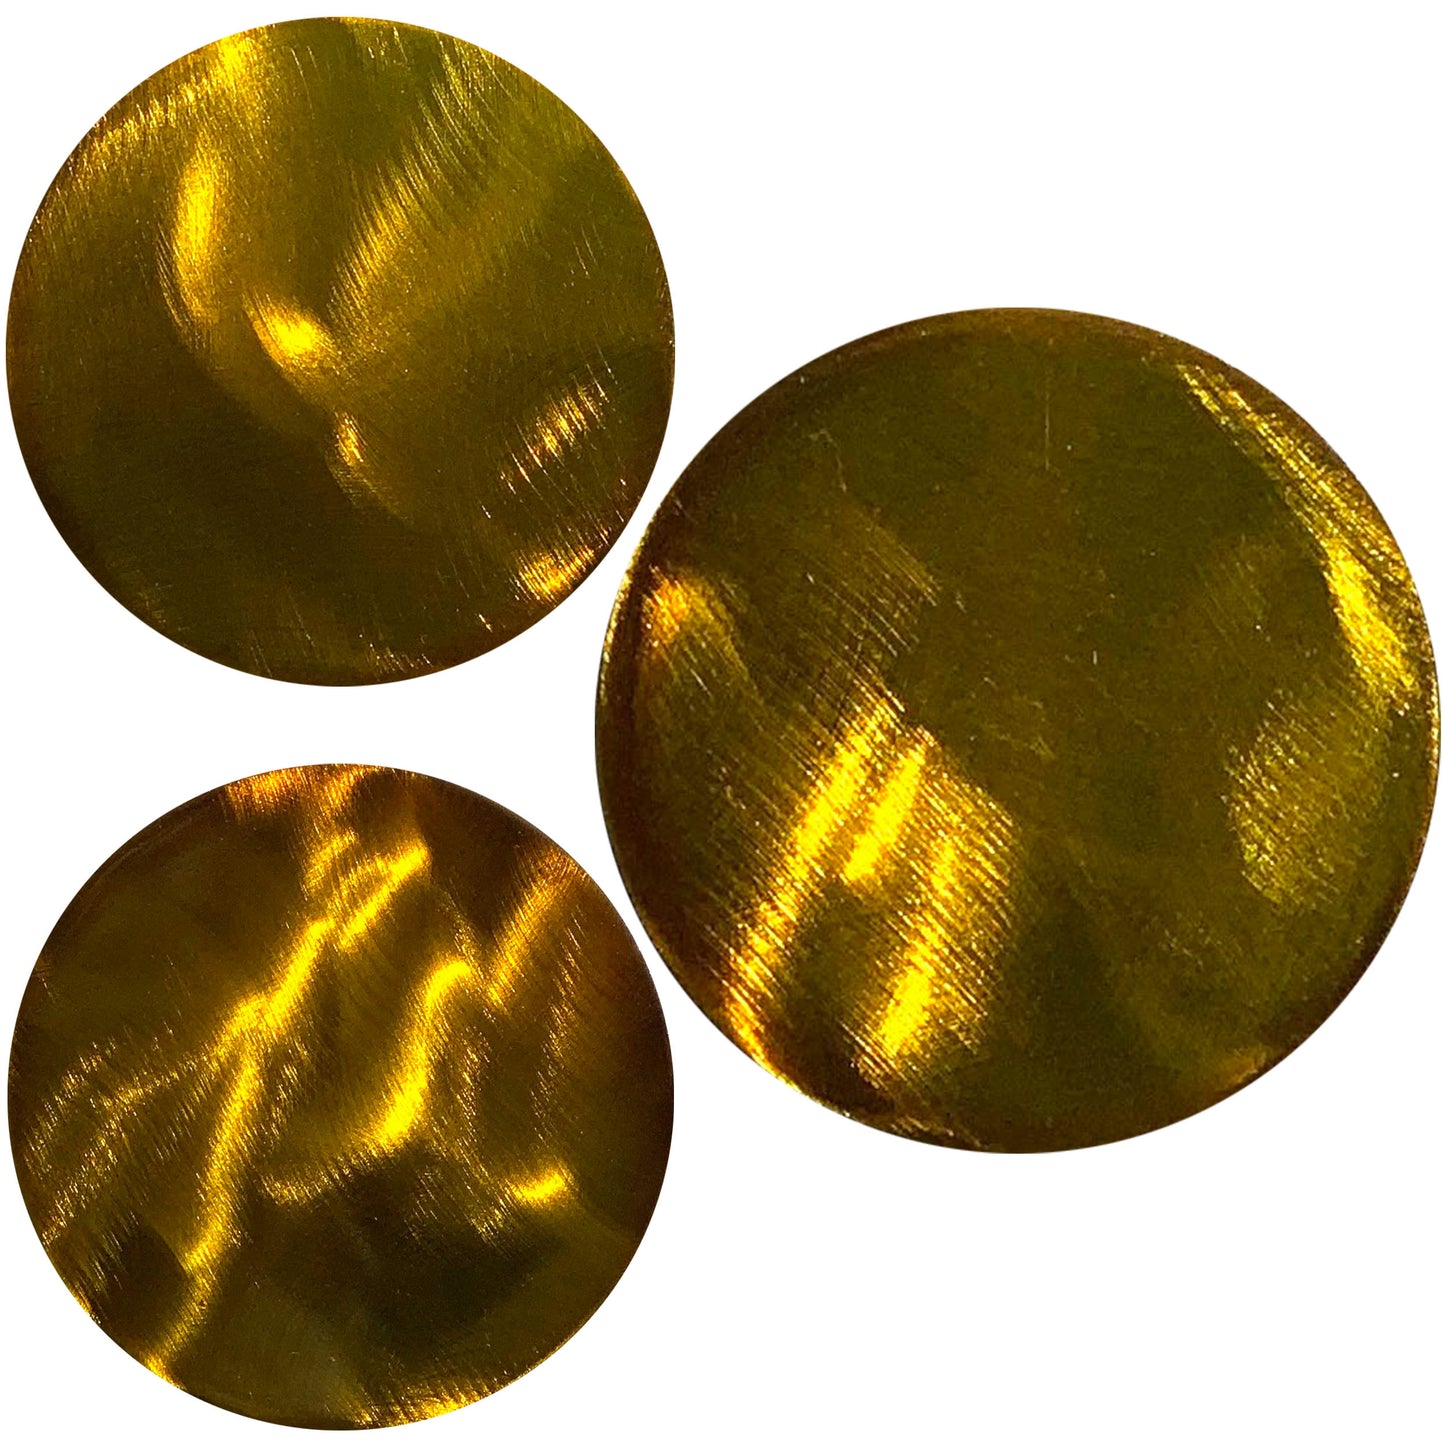 Sprig Interchangeable Metal Art Replacement Discs (Set of 3)